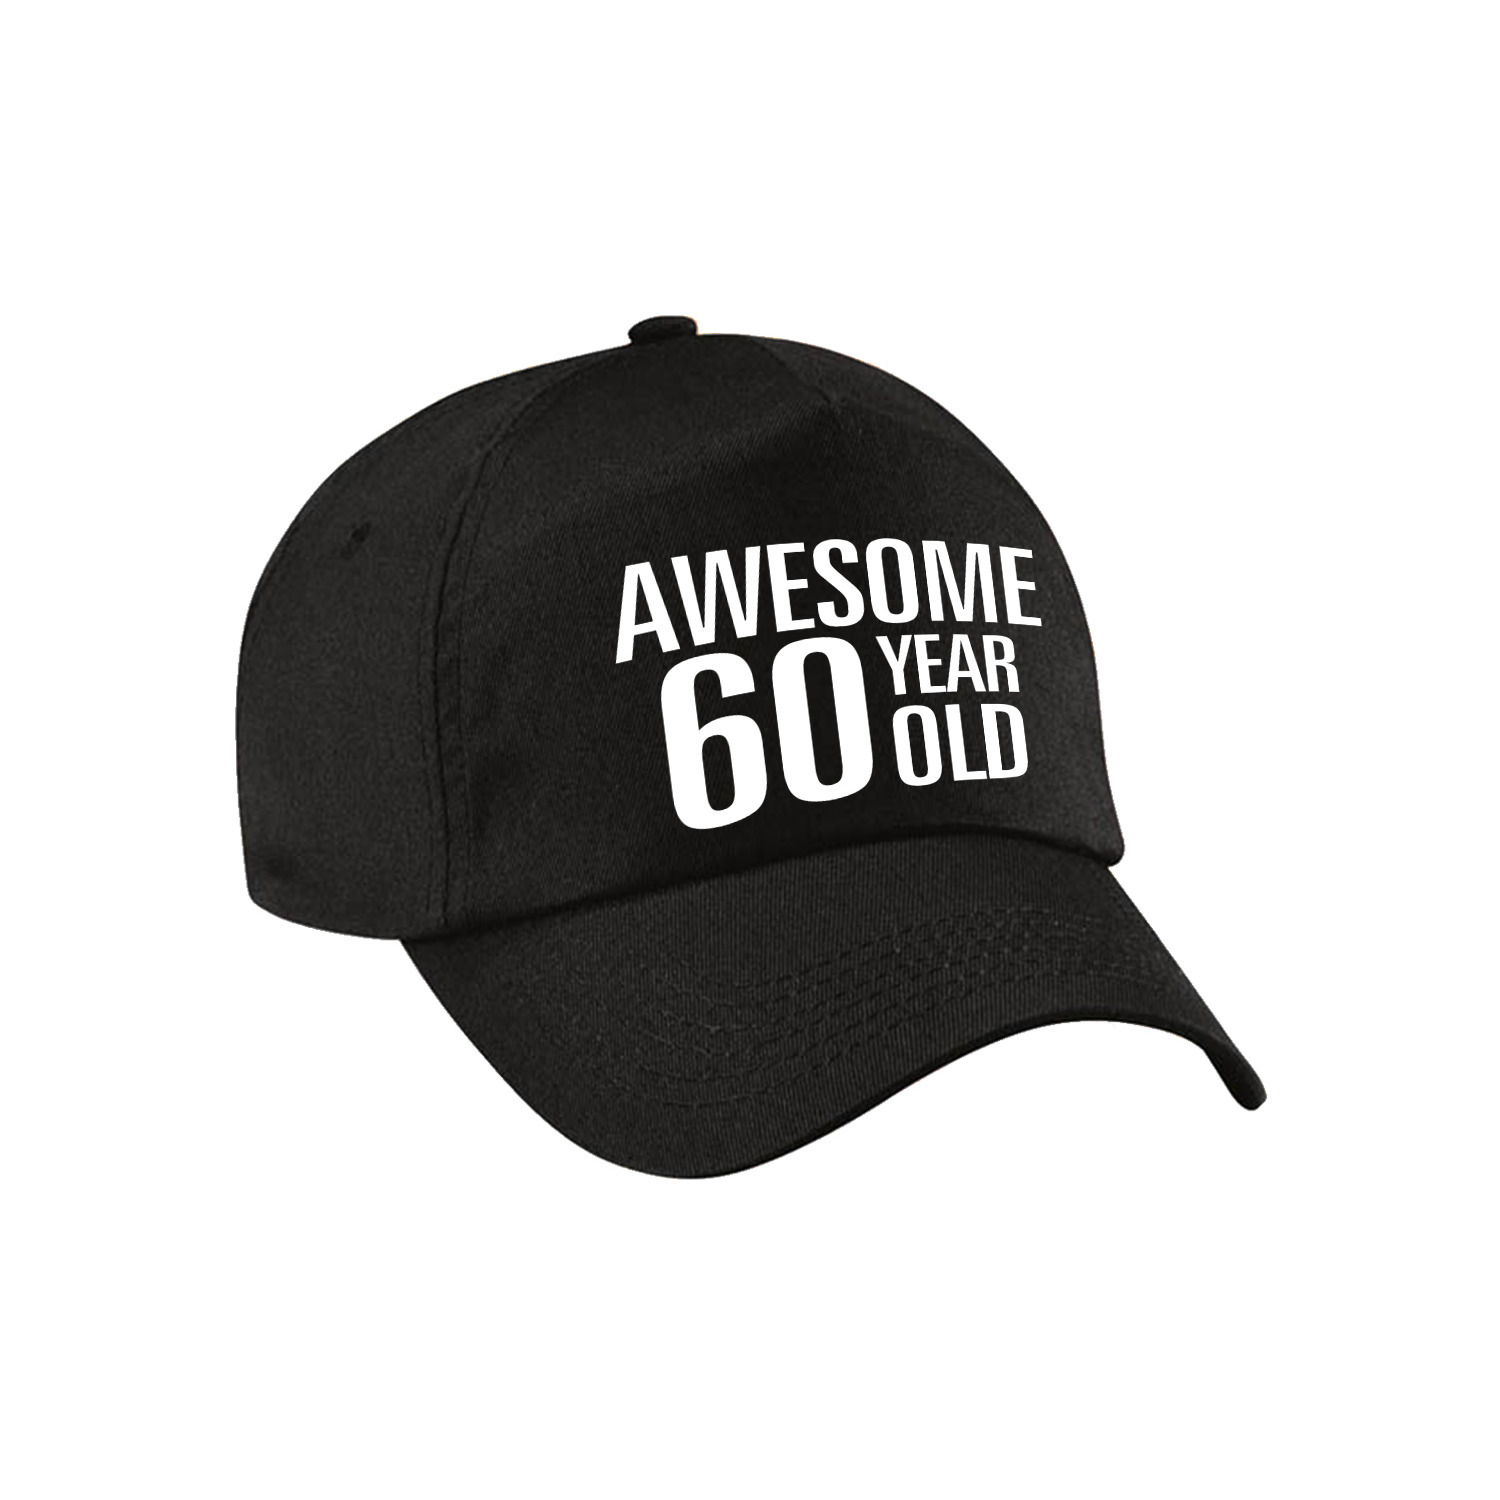 Awesome 60 year old verjaardag pet / cap zwart voor dames en heren